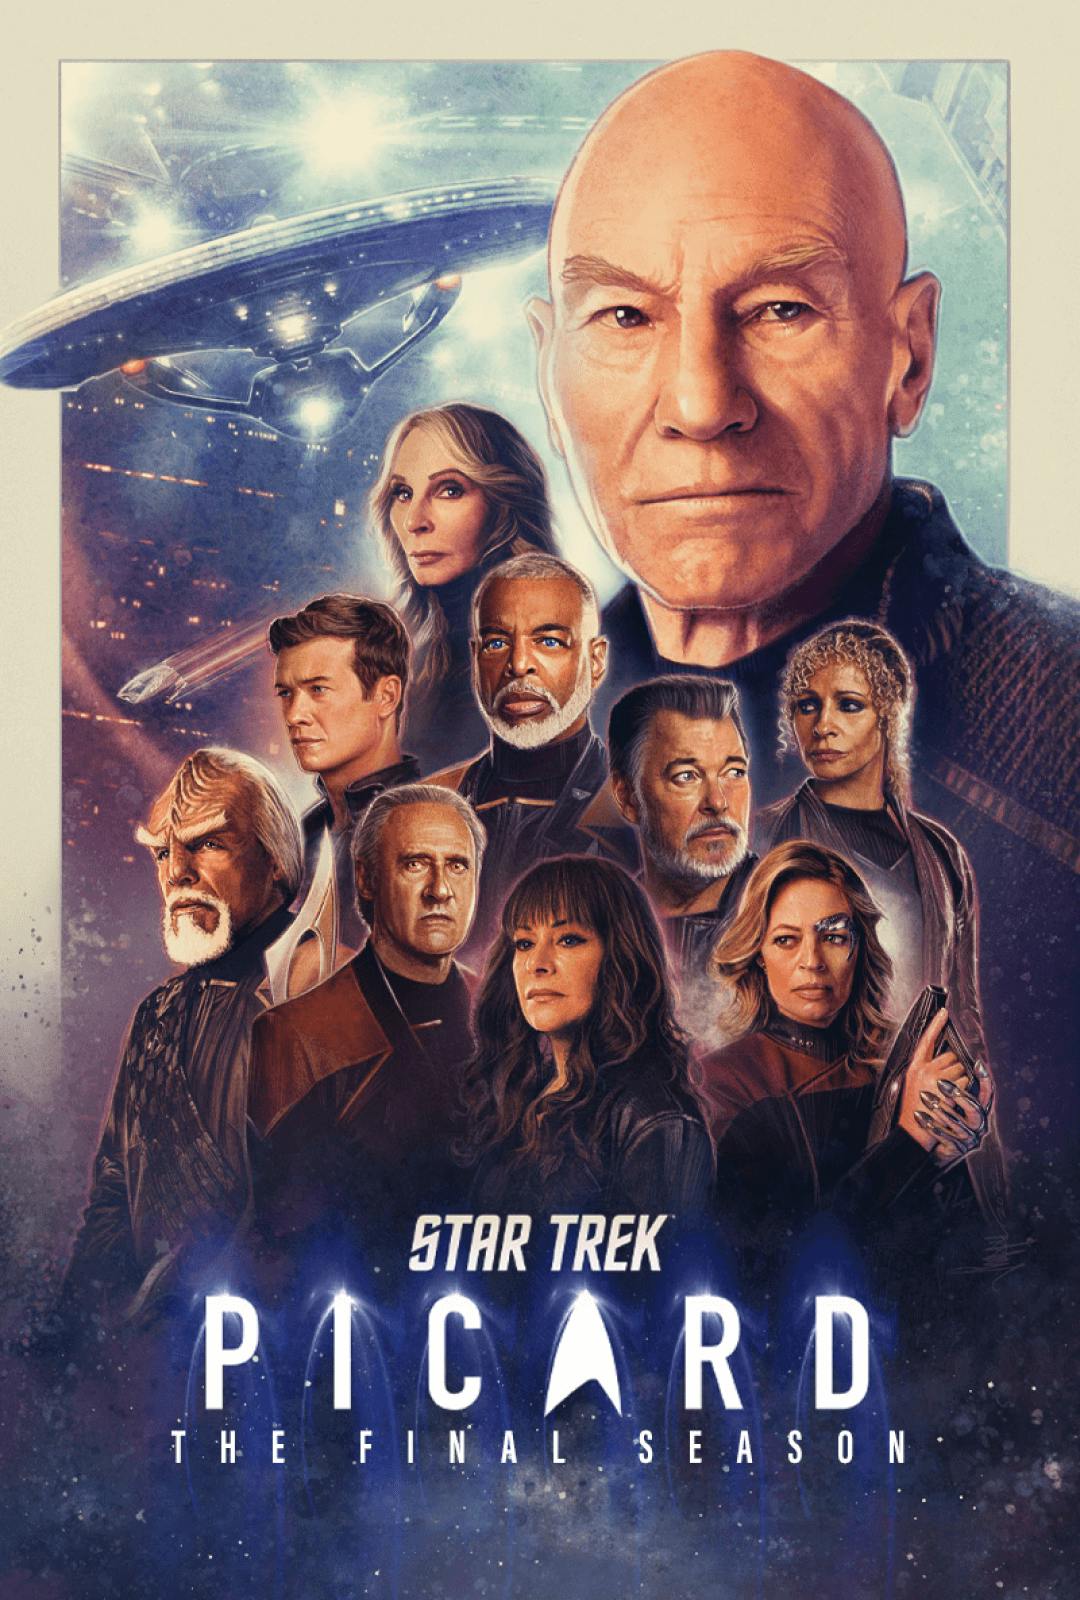 Key art for Star Trek: Picard Season 3